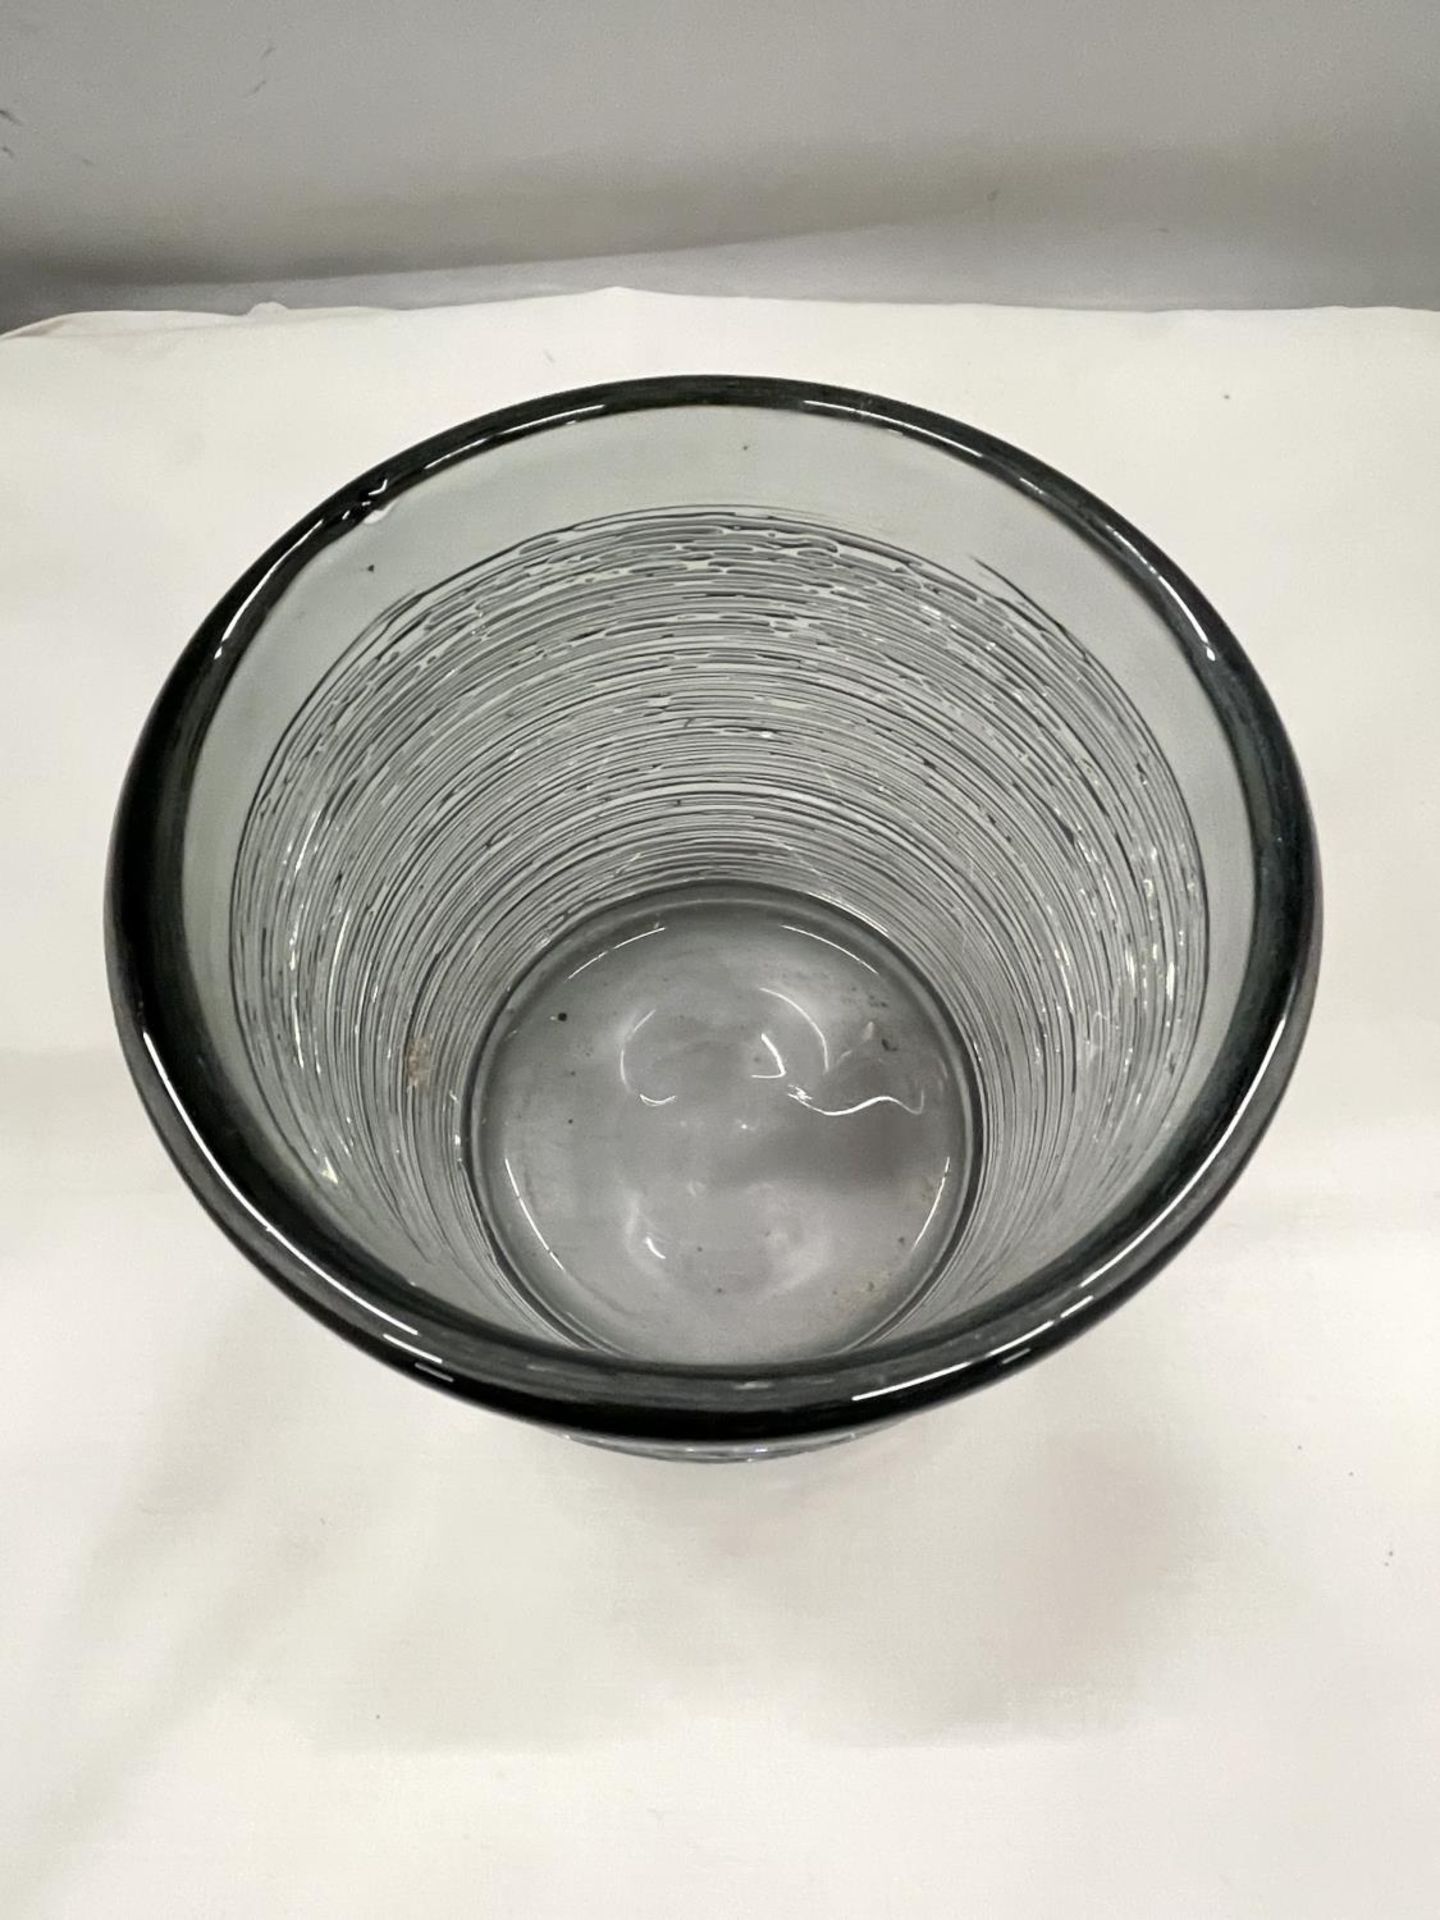 A SPUN GLASS VASE POSSIBLY BY BENGT EDENFELDT 15CM HIGH - Image 3 of 5